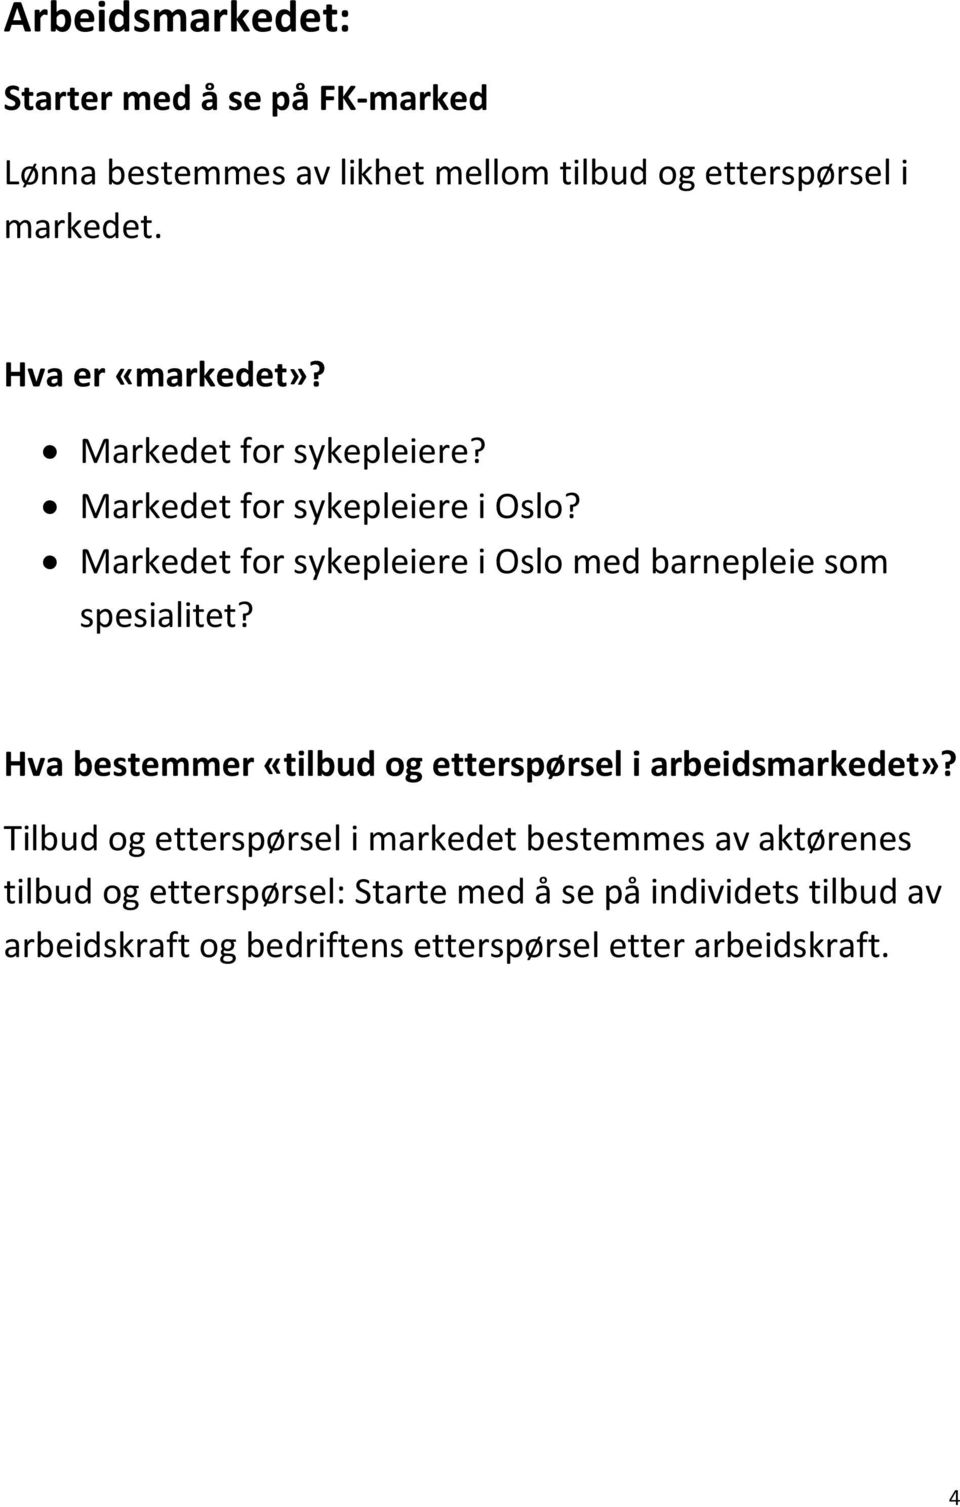 Markedet for sykepleiere i Oslo med barnepleie som spesialitet? Hva bestemmer «tilbud og etterspørsel i arbeidsmarkedet»?